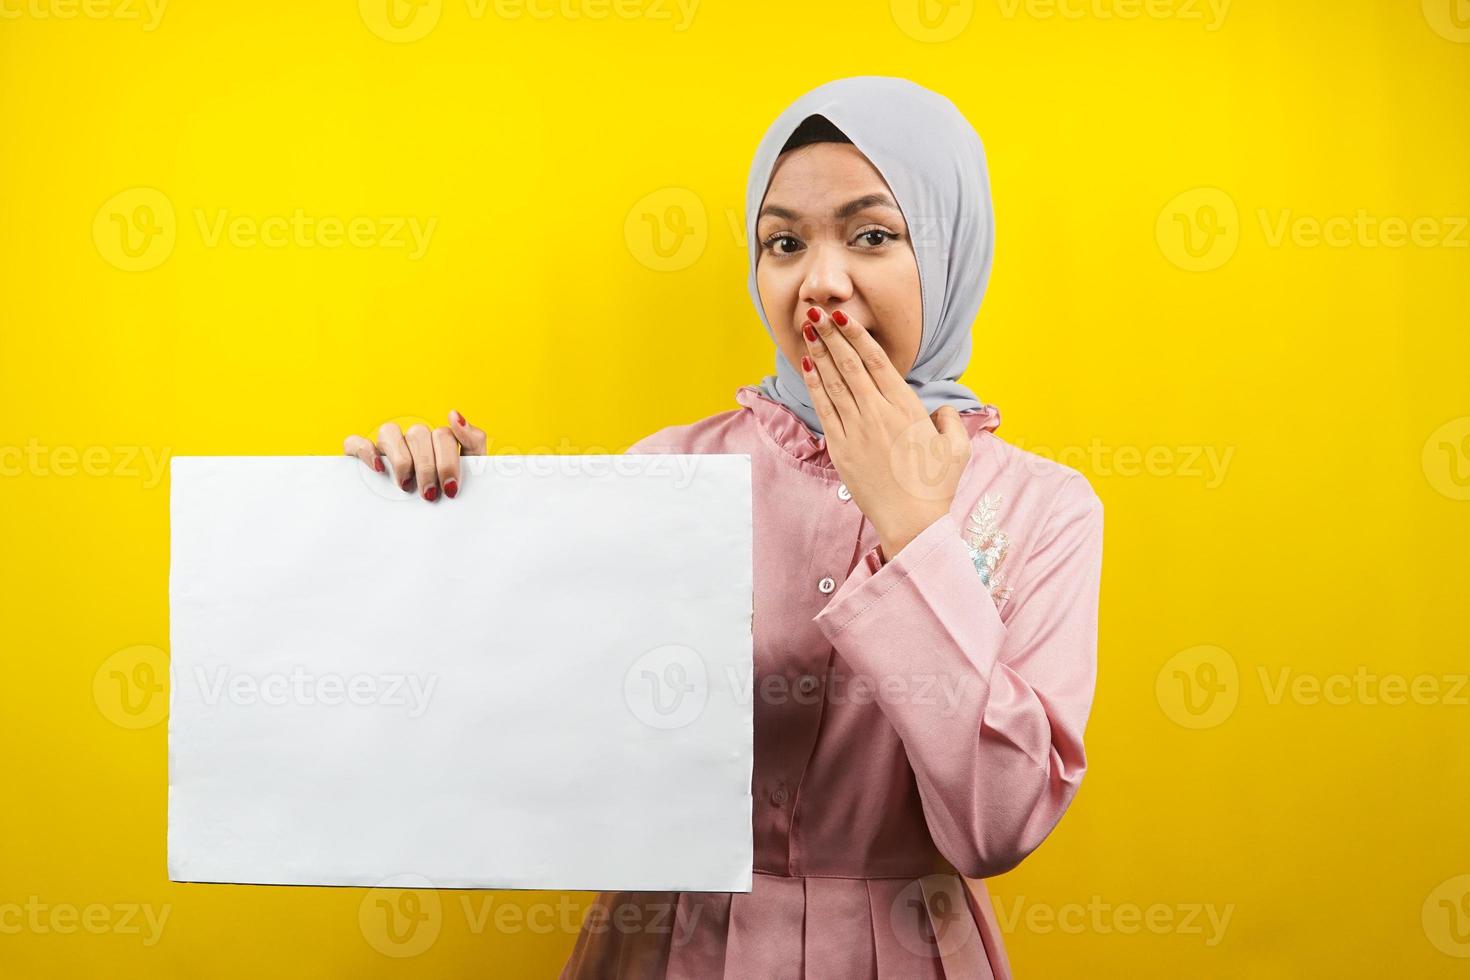 ganska ung muslimsk kvinna förvånad, hand som håller en tom banderoll, plakat, vit tavla, tom skylttavla, vit reklamtavla, presenterar något i kopieringsutrymmet, marknadsföring foto